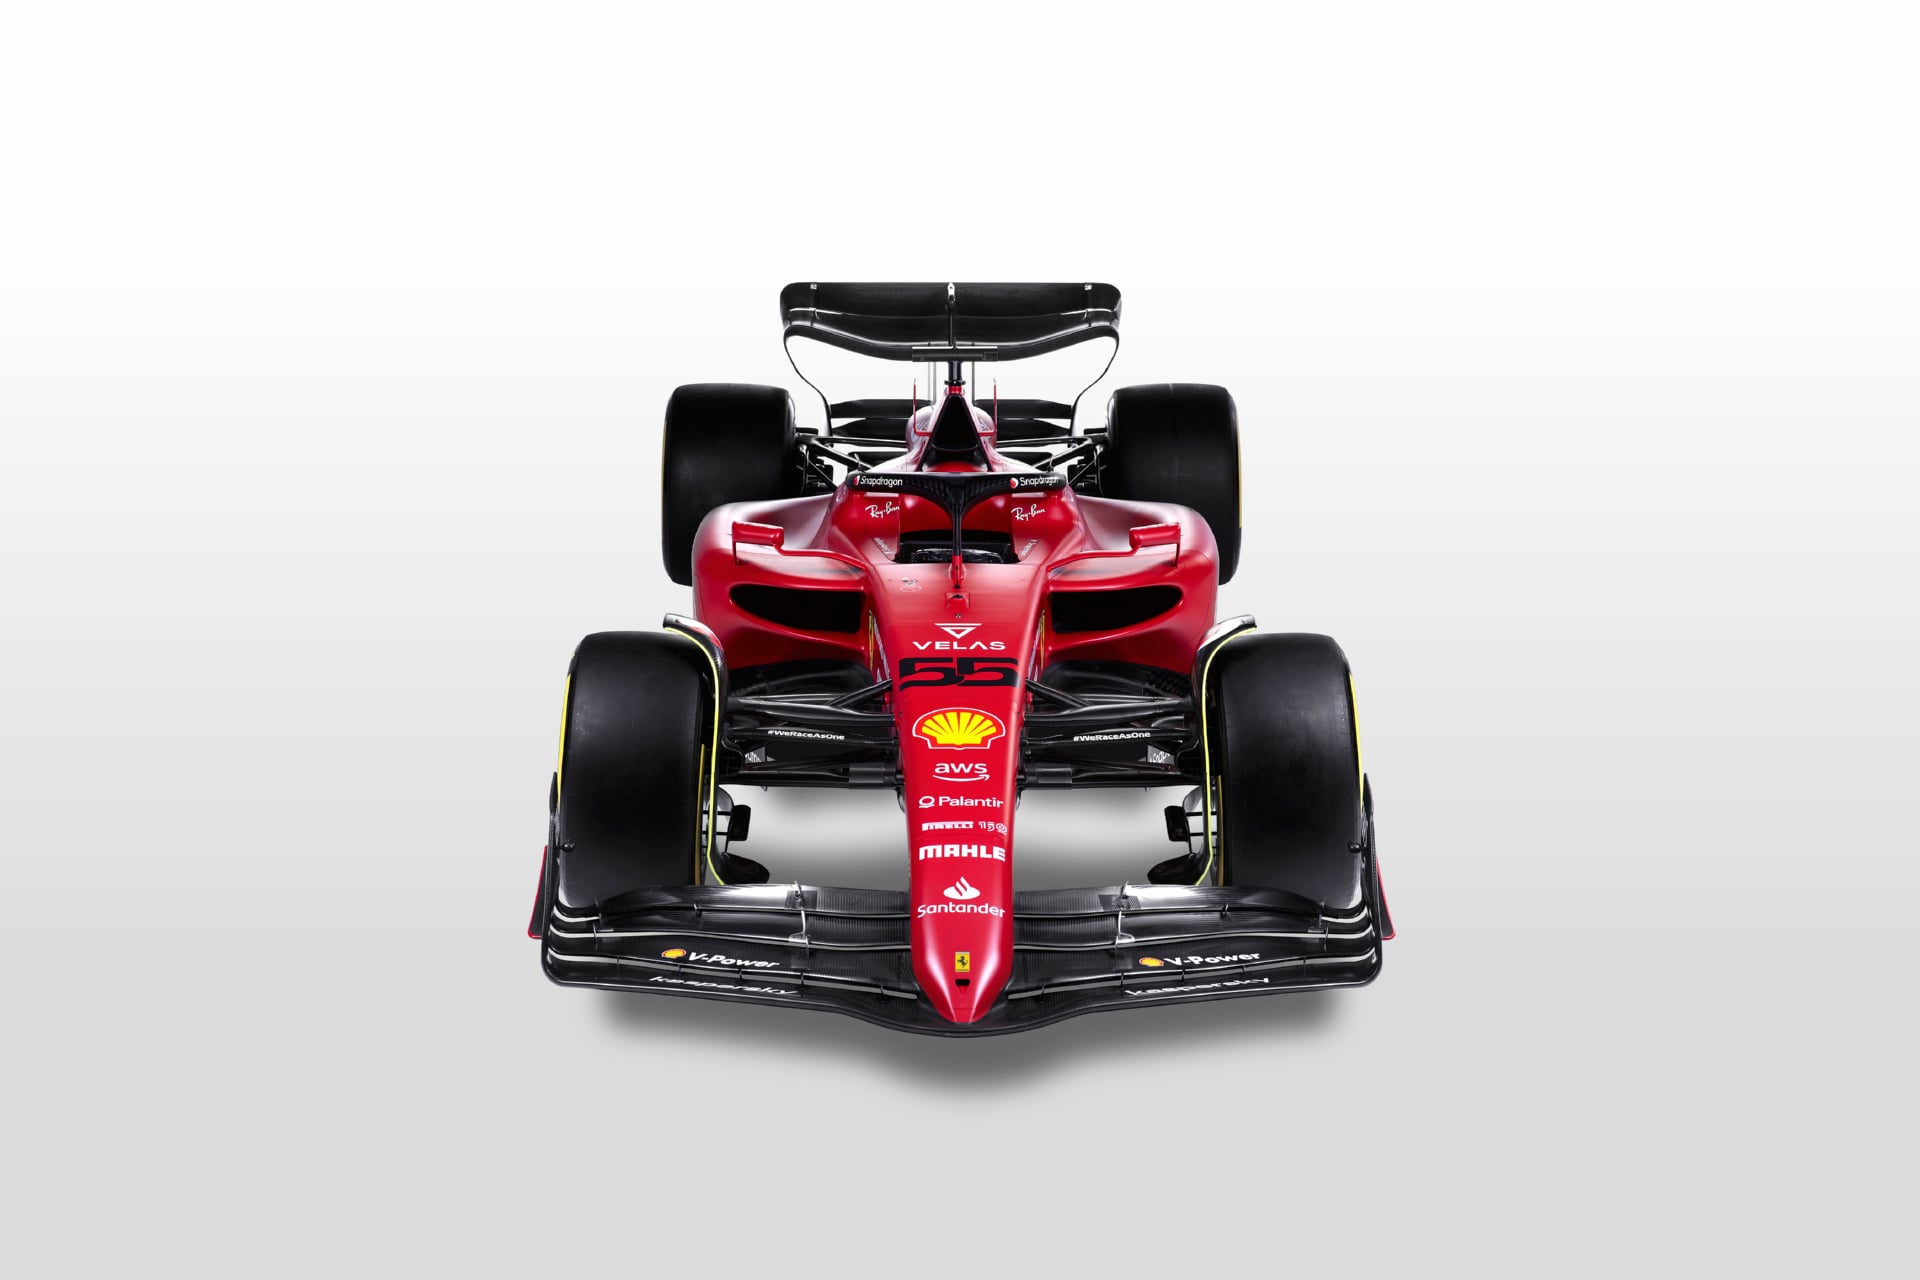 Ferrari F1-75 at 2048 x 2048 iPad size wallpapers HD quality